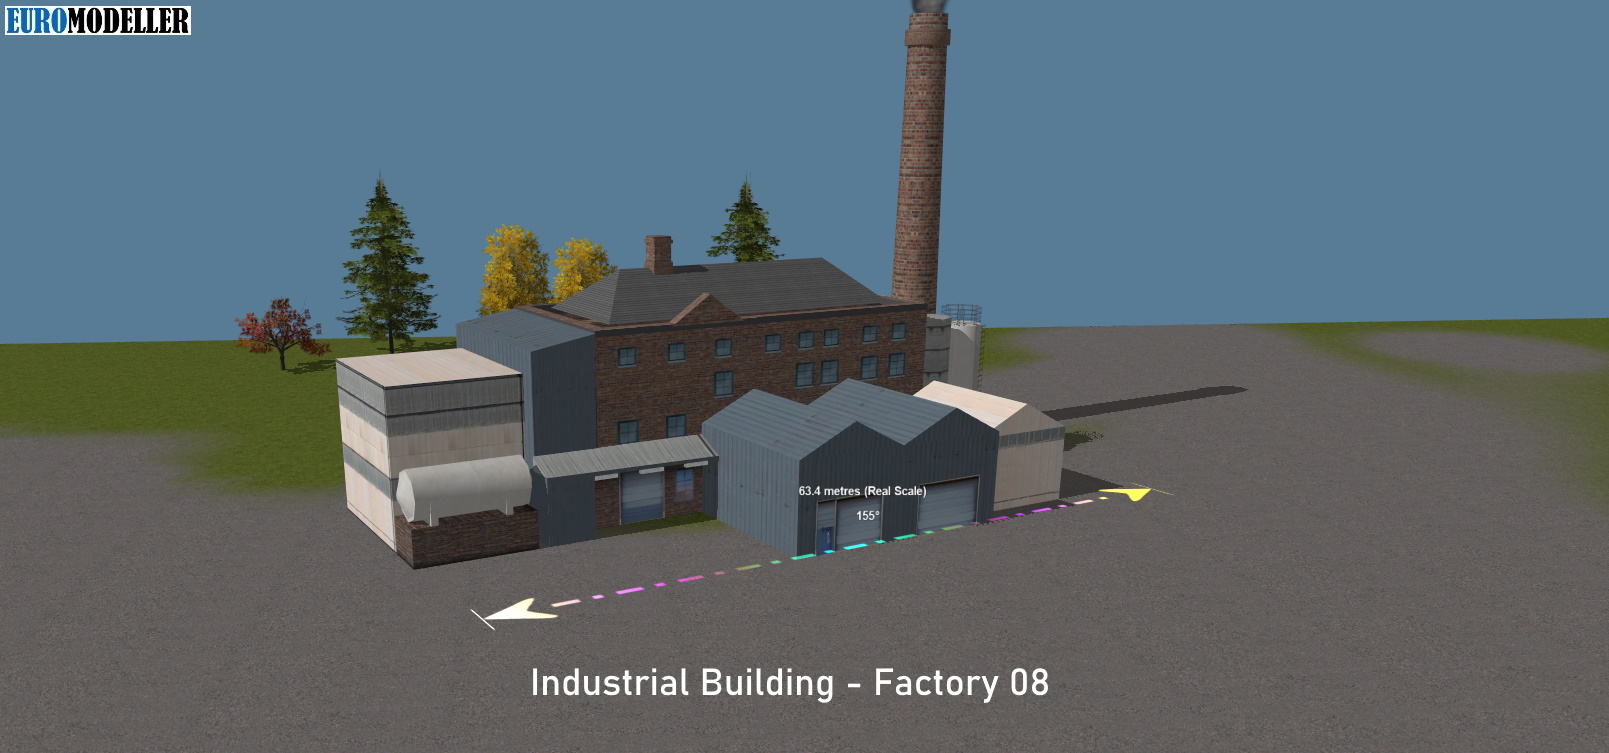 Factory 08 - Fabrik 08